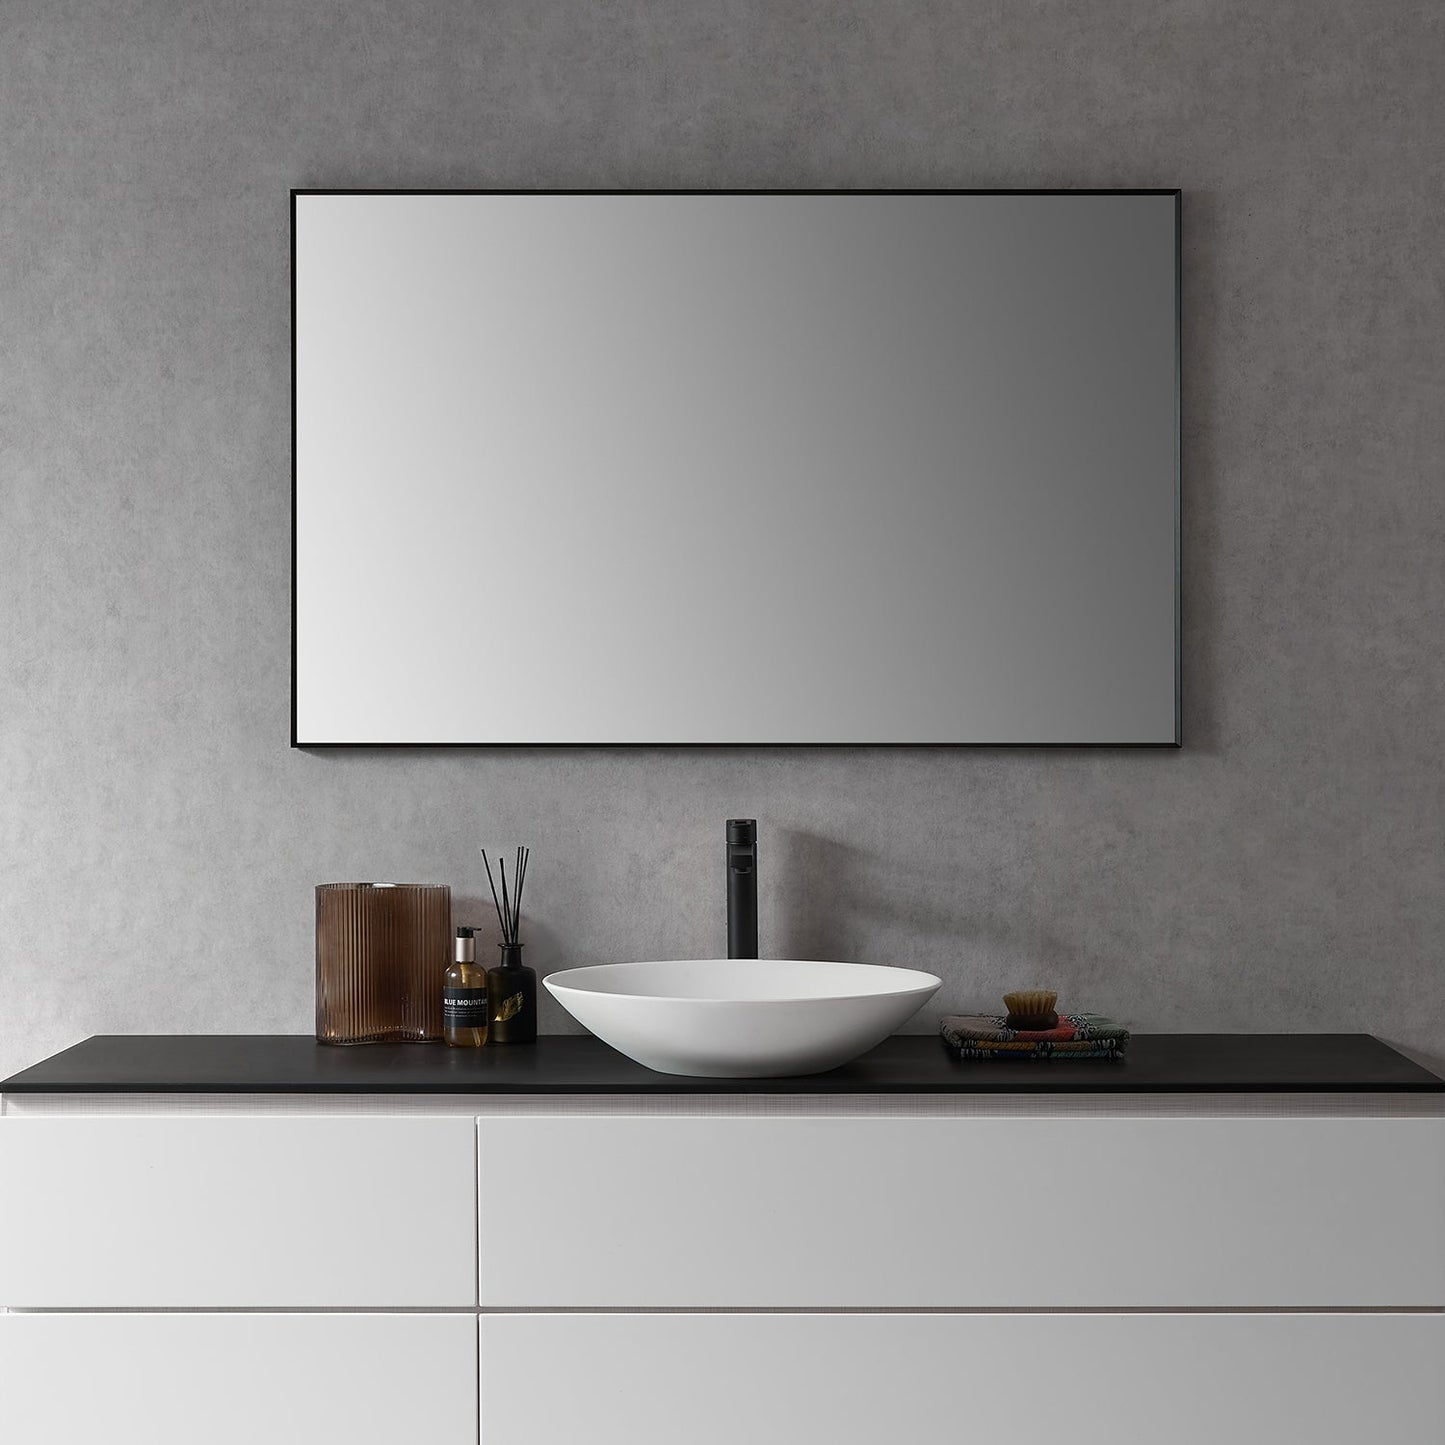 Sassi 48" Rectangle Bathroom/Vanity Matt Black Aluminum Framed Wall Mirror